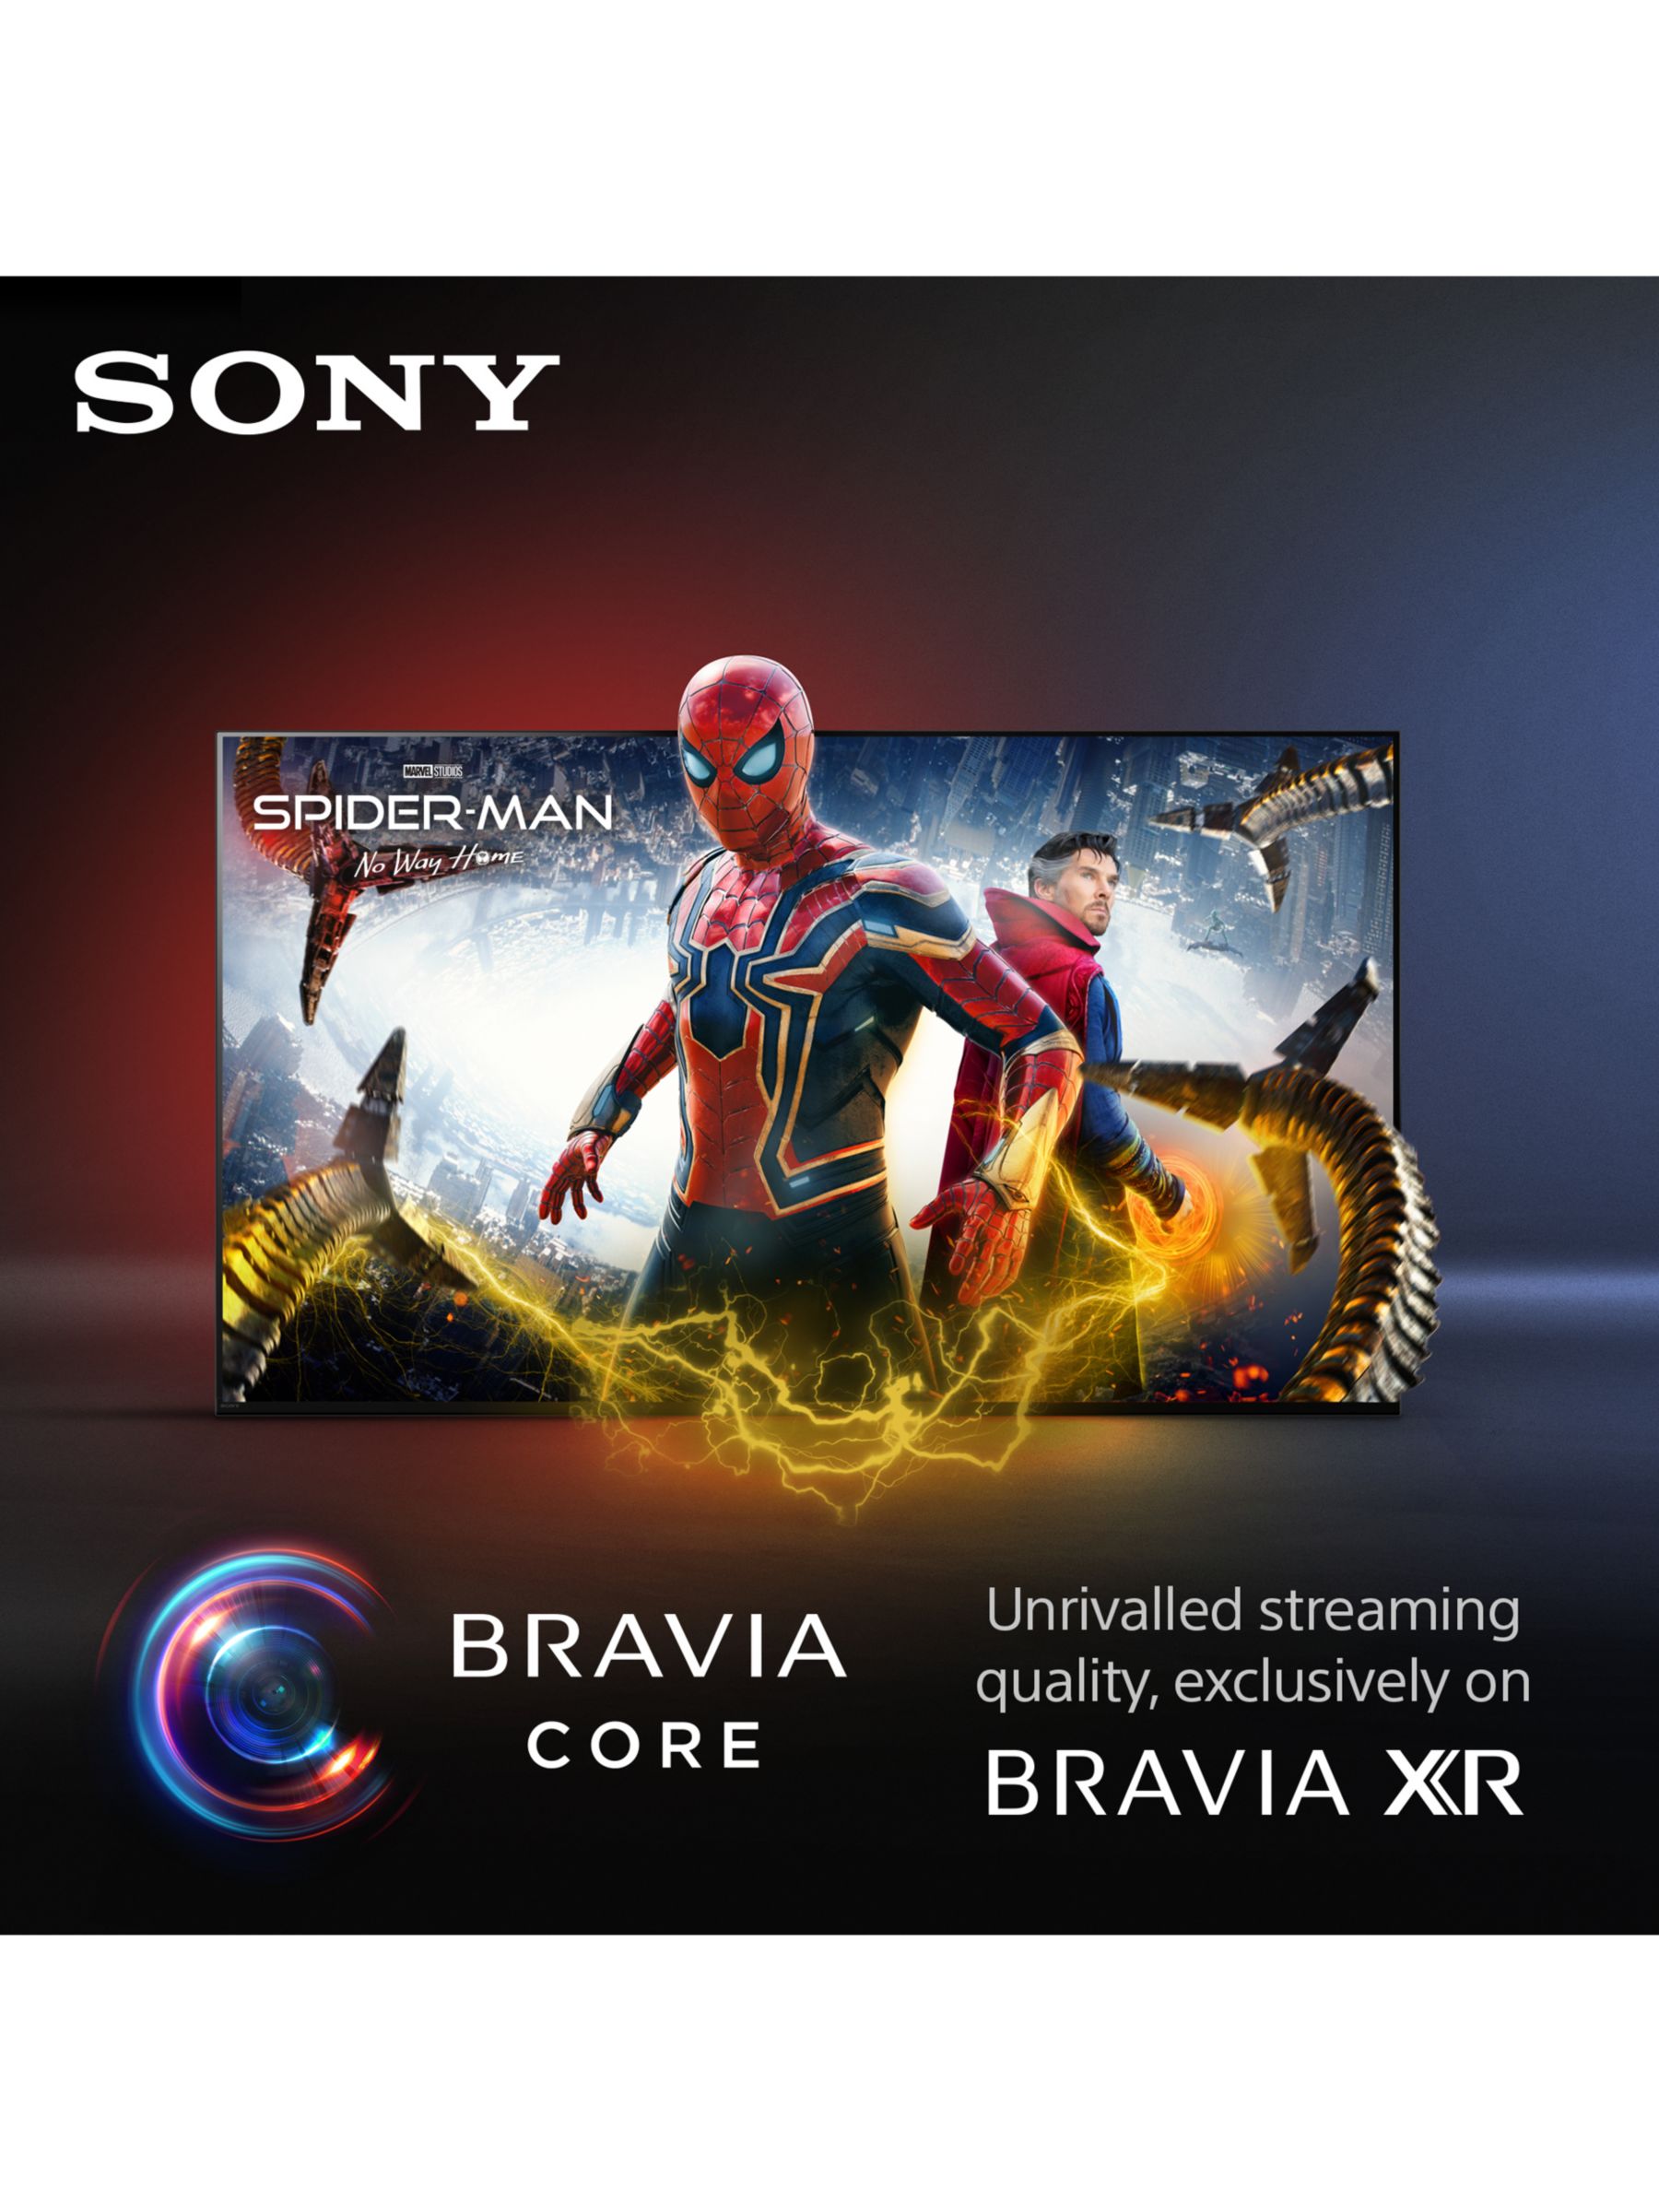 BRAVIA XR A75K, OLED, 4K Ultra HD